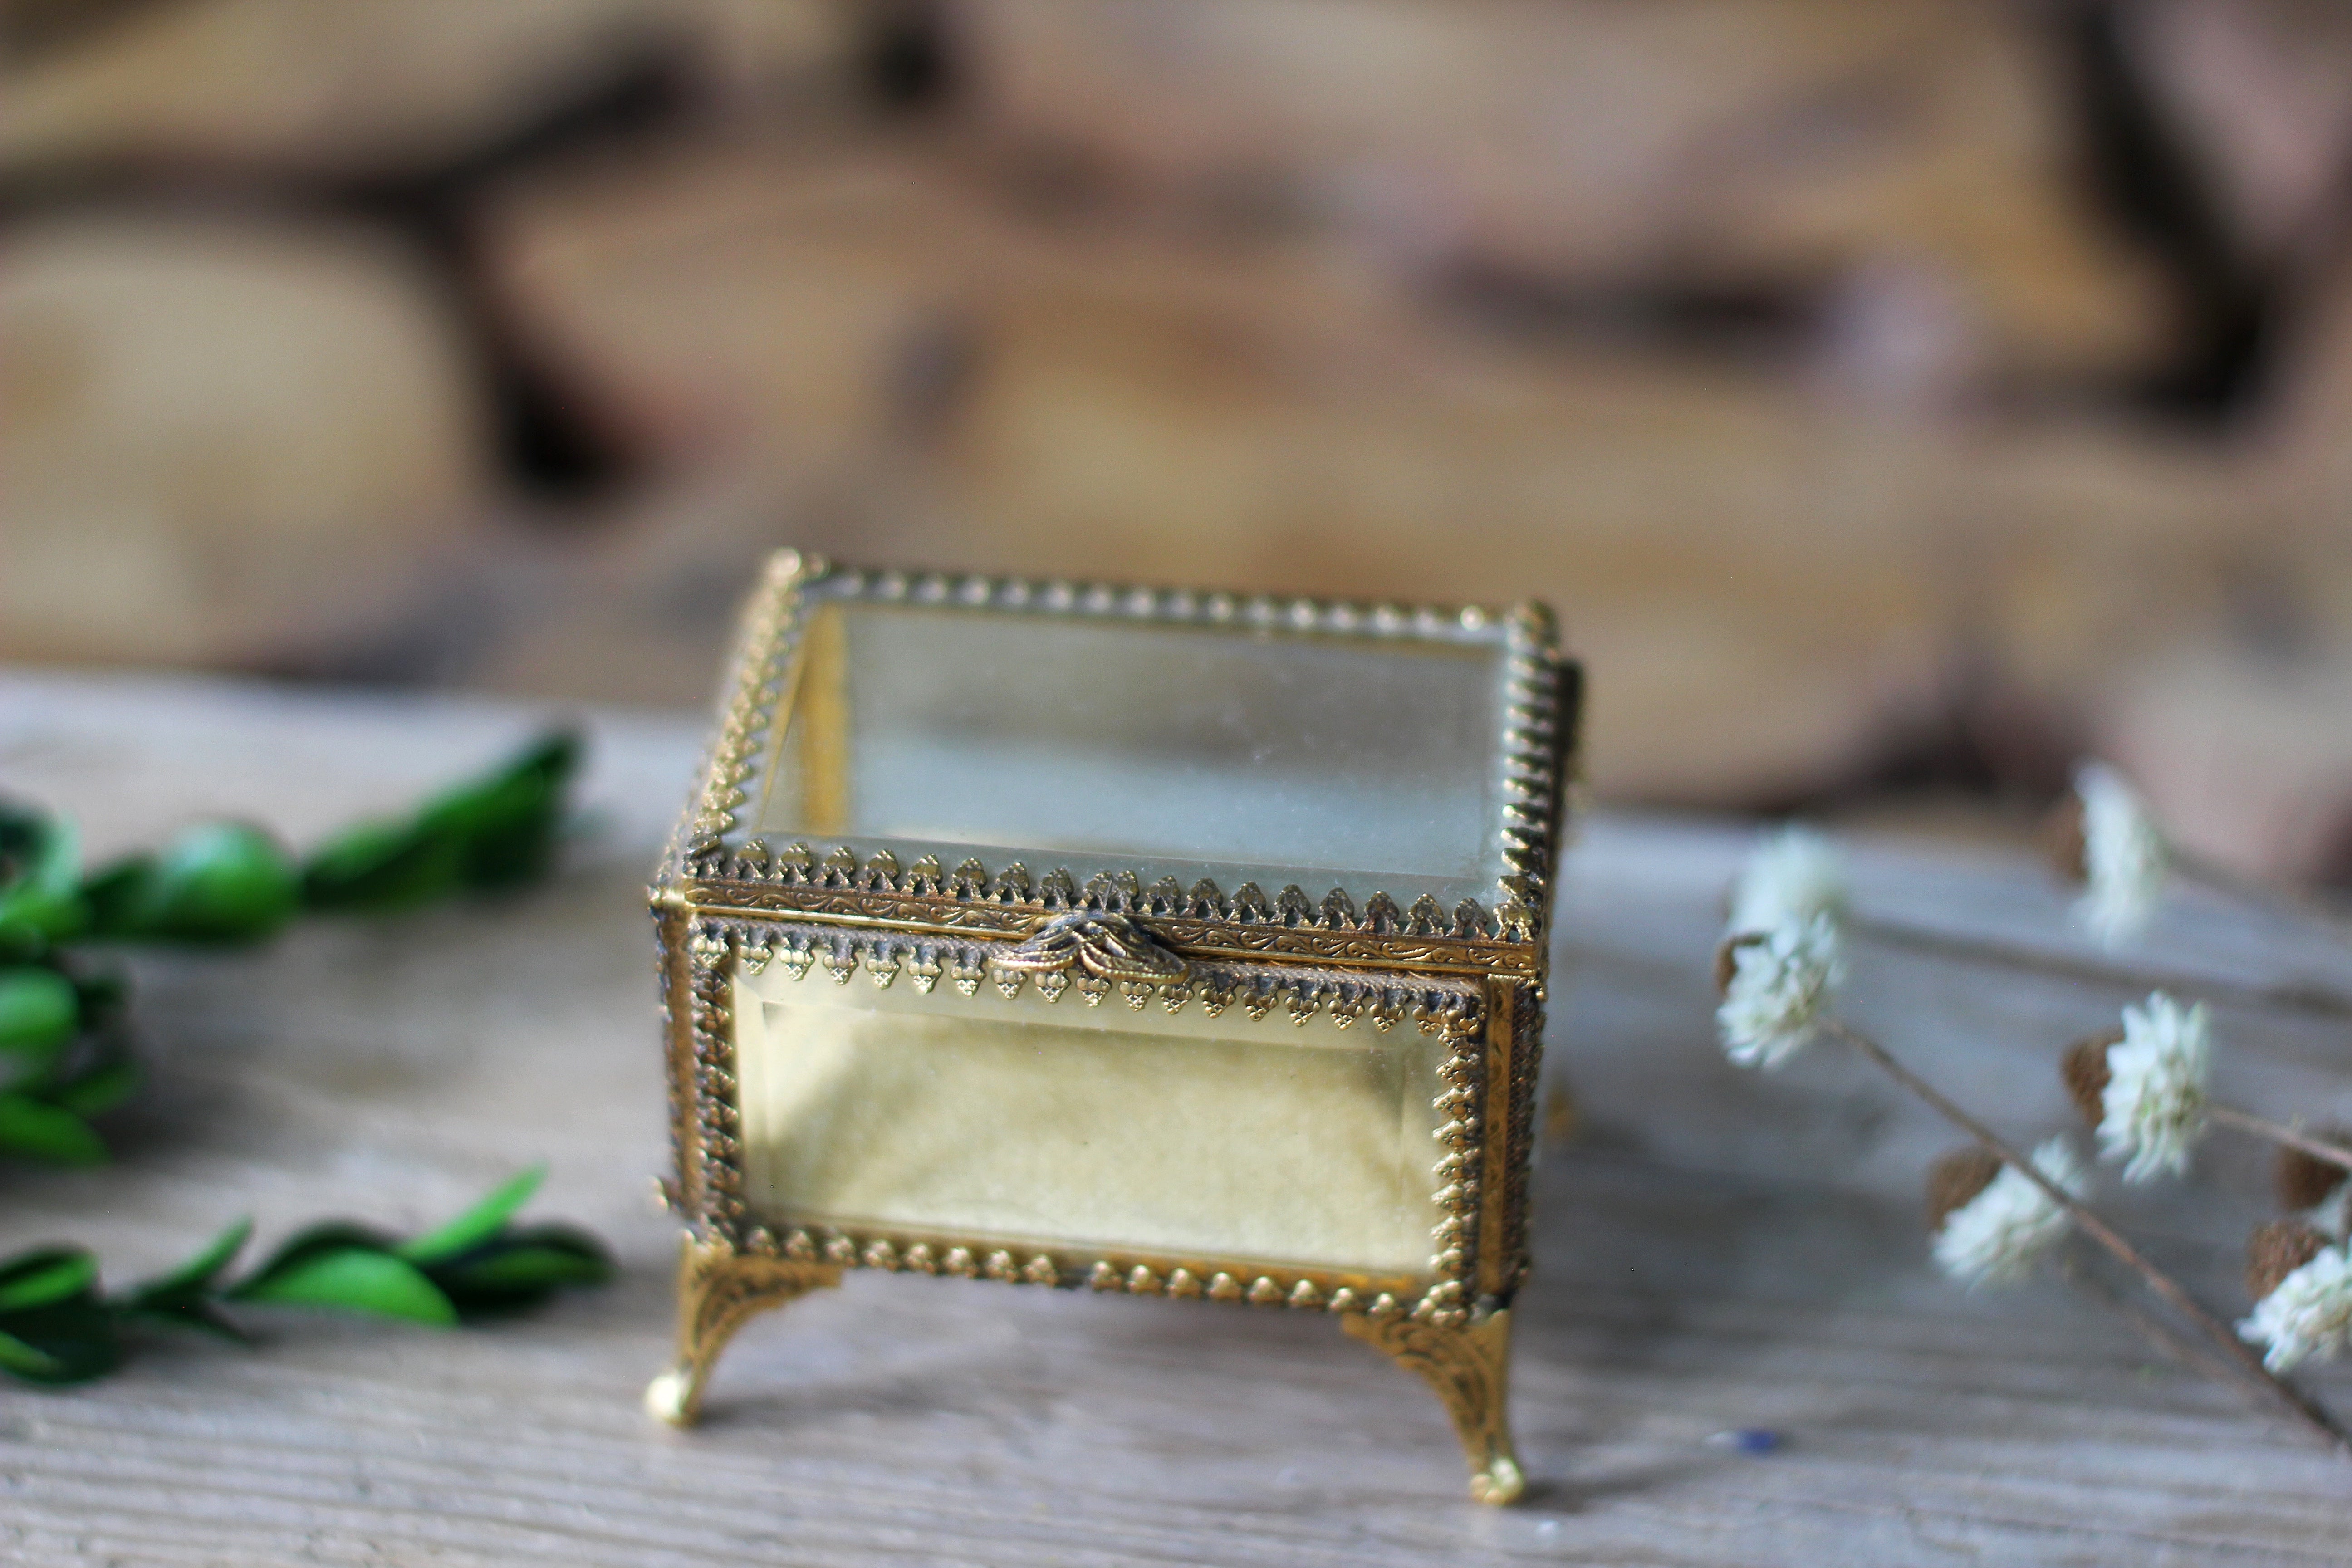 Antique Jewelry Boxes – Avigail Adam